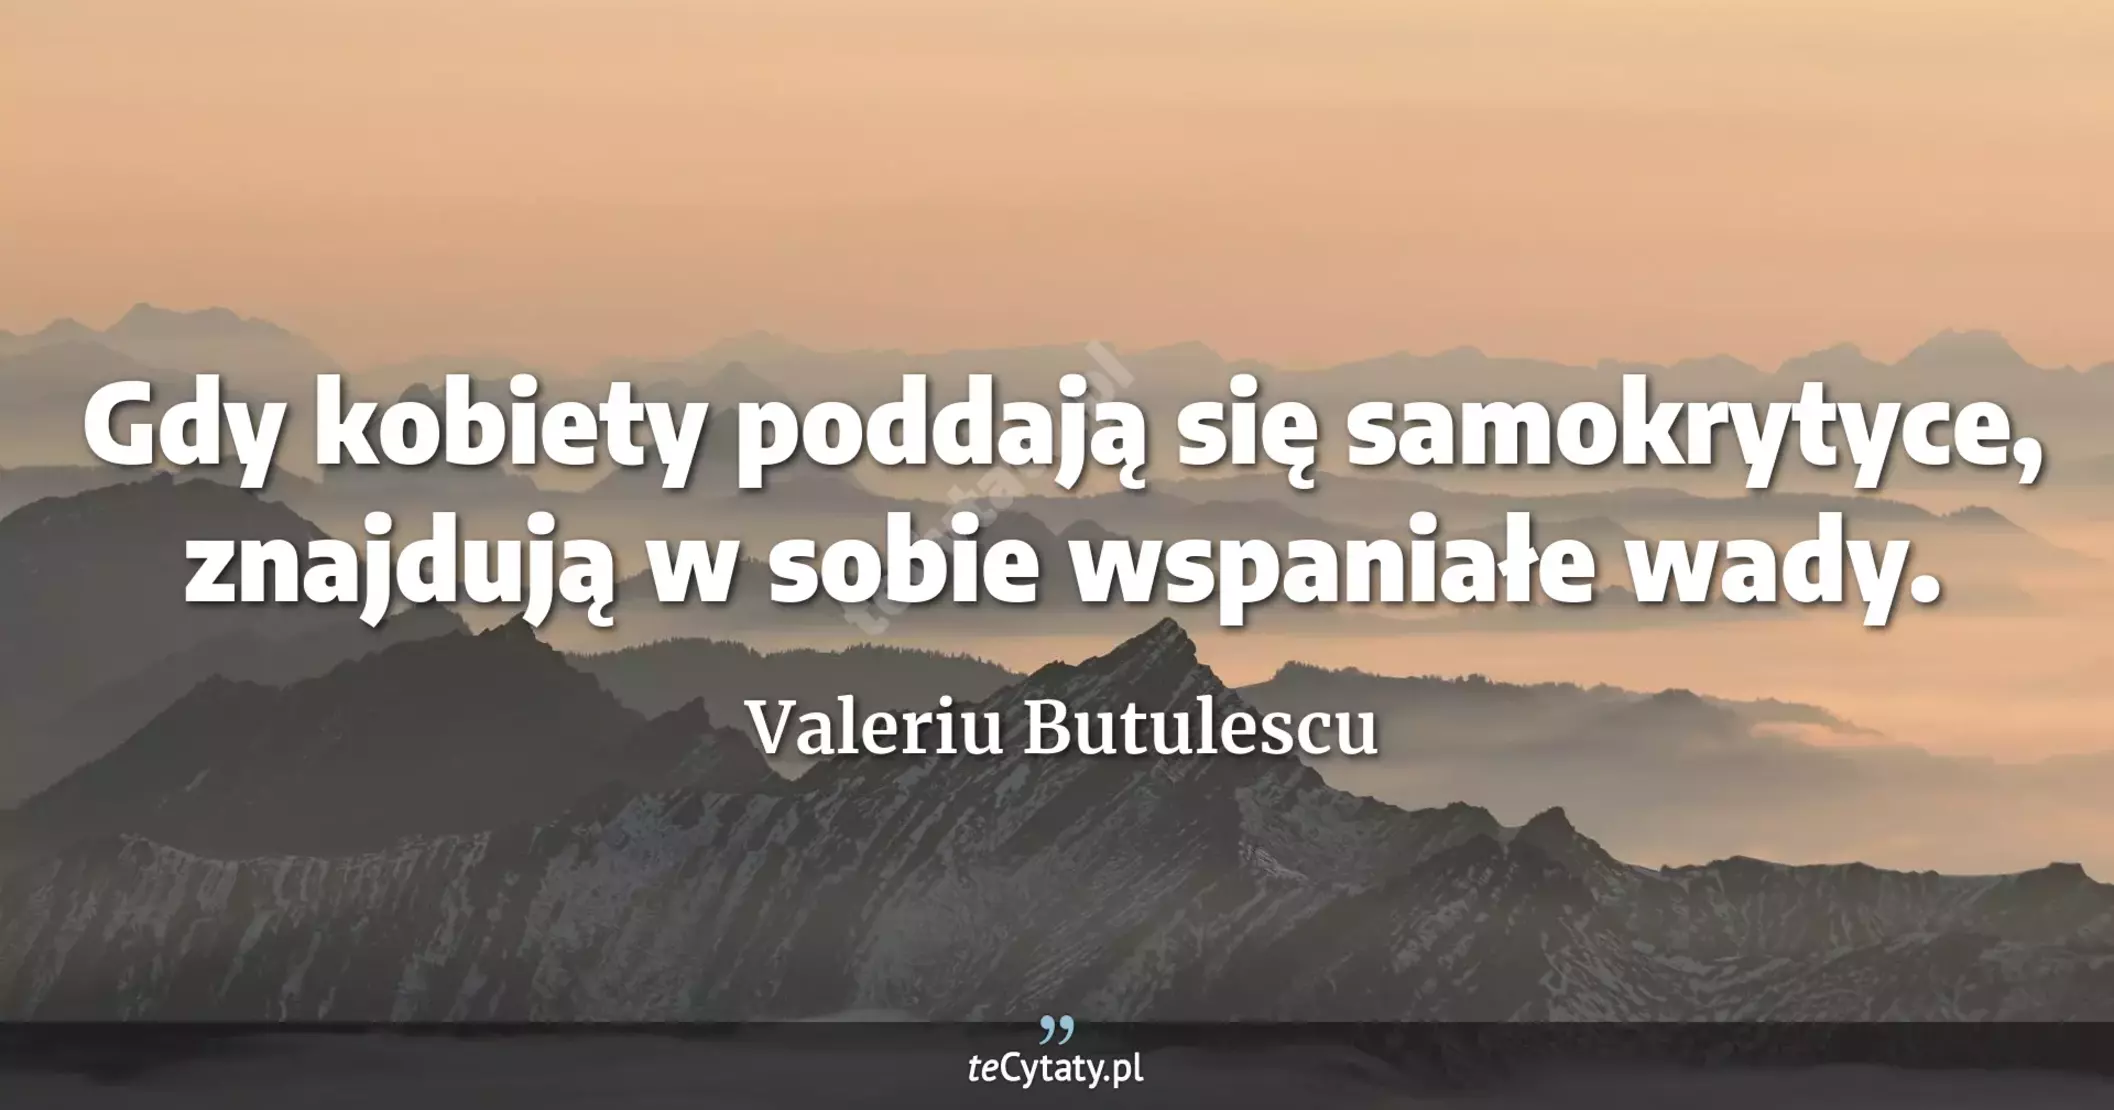 Gdy kobiety poddają się samokrytyce, znajdują w sobie wspaniałe wady. - Valeriu Butulescu